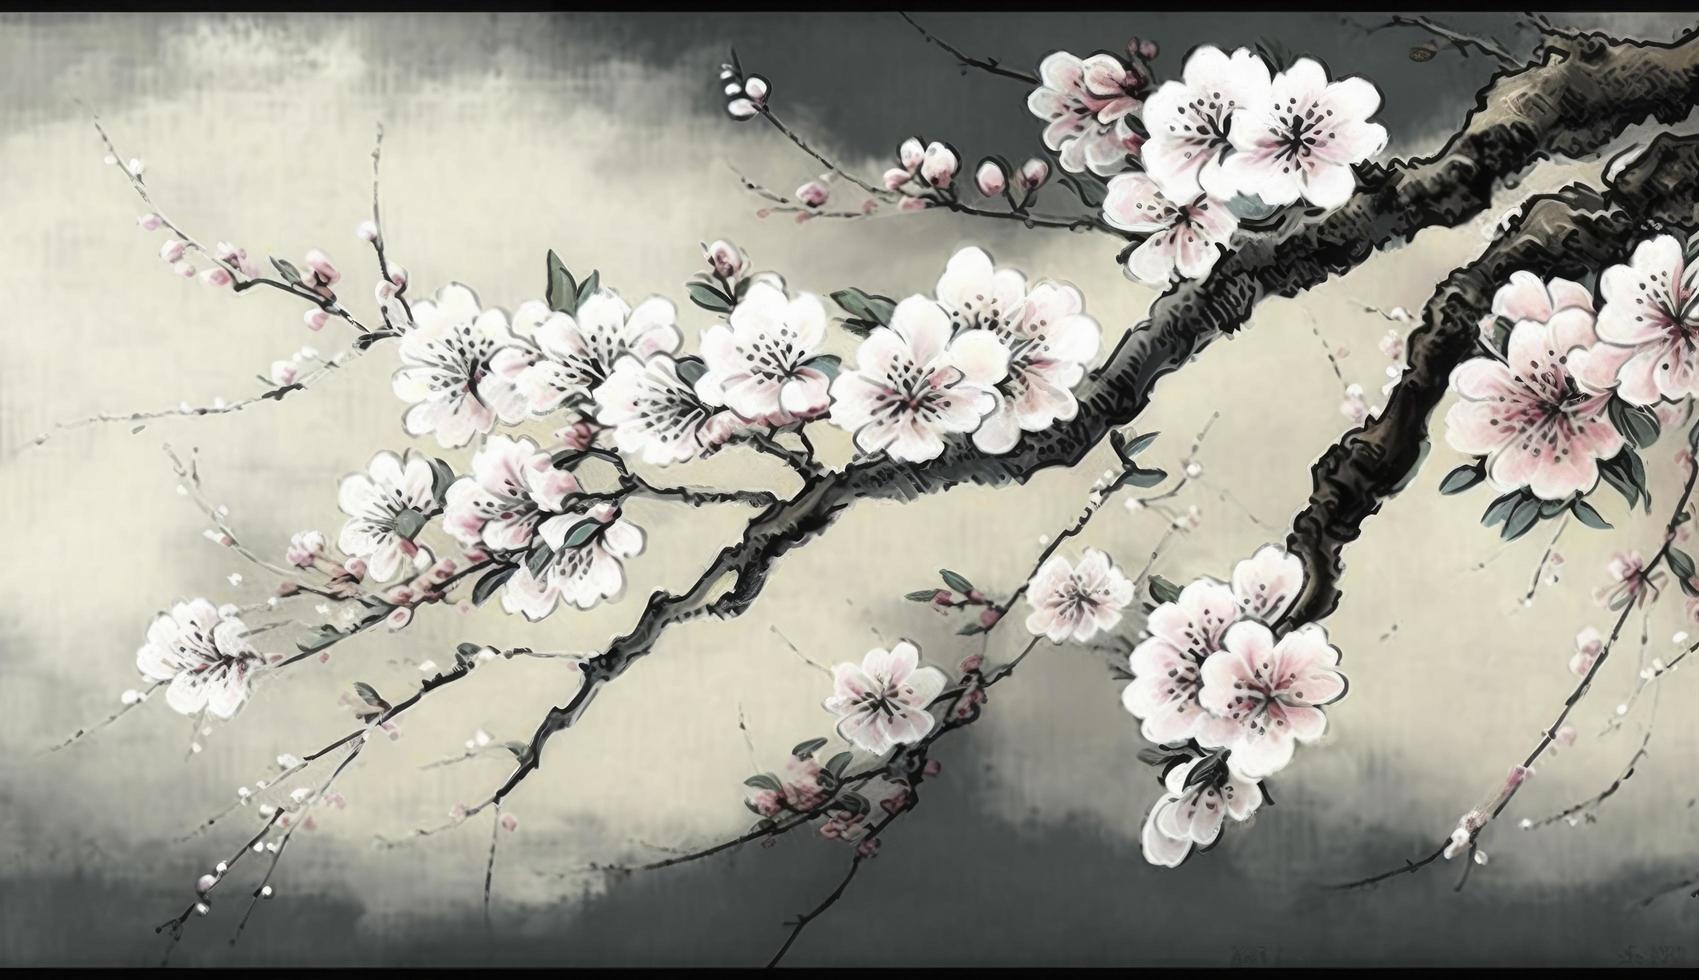 kinesisk landskap målning körsbär blomma skriva ut konst, japansk målning körsbär blomma, bläck vinter- ljuv, illustration, vattenfärg målning, kinesisk kultur, vattenfärg målar, generera ai foto